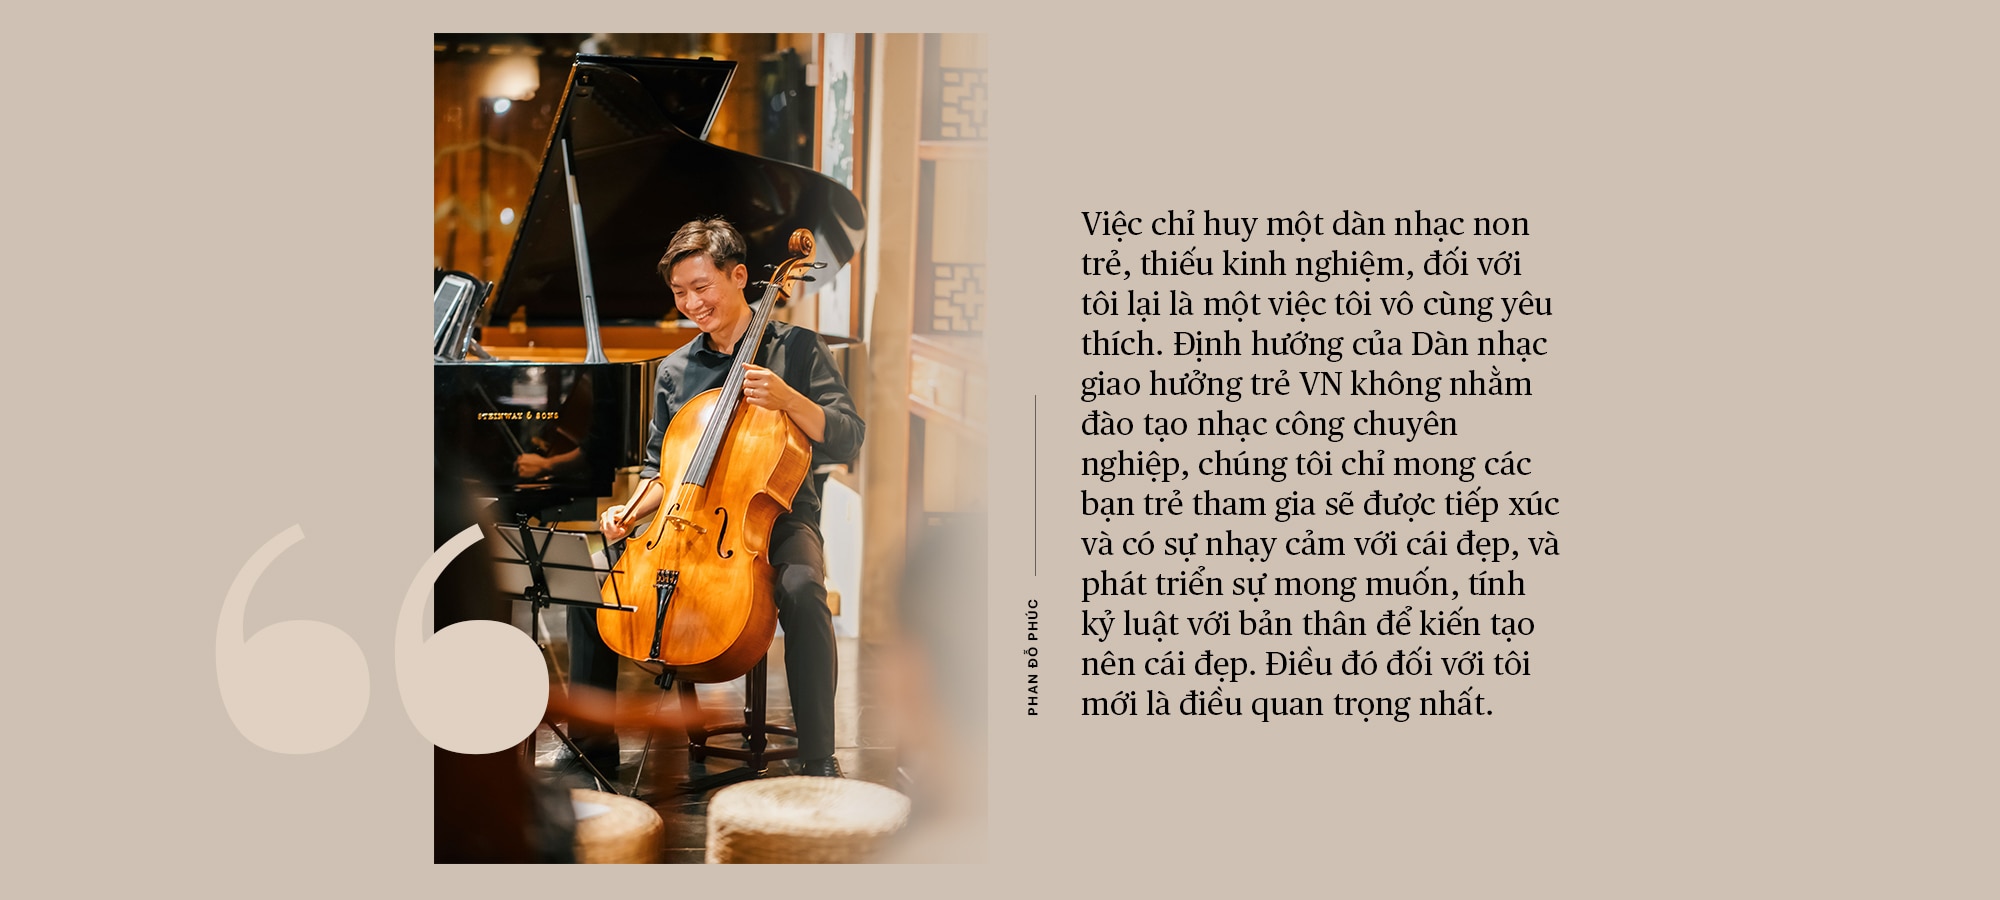 Nhạc trưởng Phan Đỗ Phúc:
“Vị trí cây cello trong dàn nhạc dạy tôi thế đứng trong cuộc đời”- Ảnh 3.